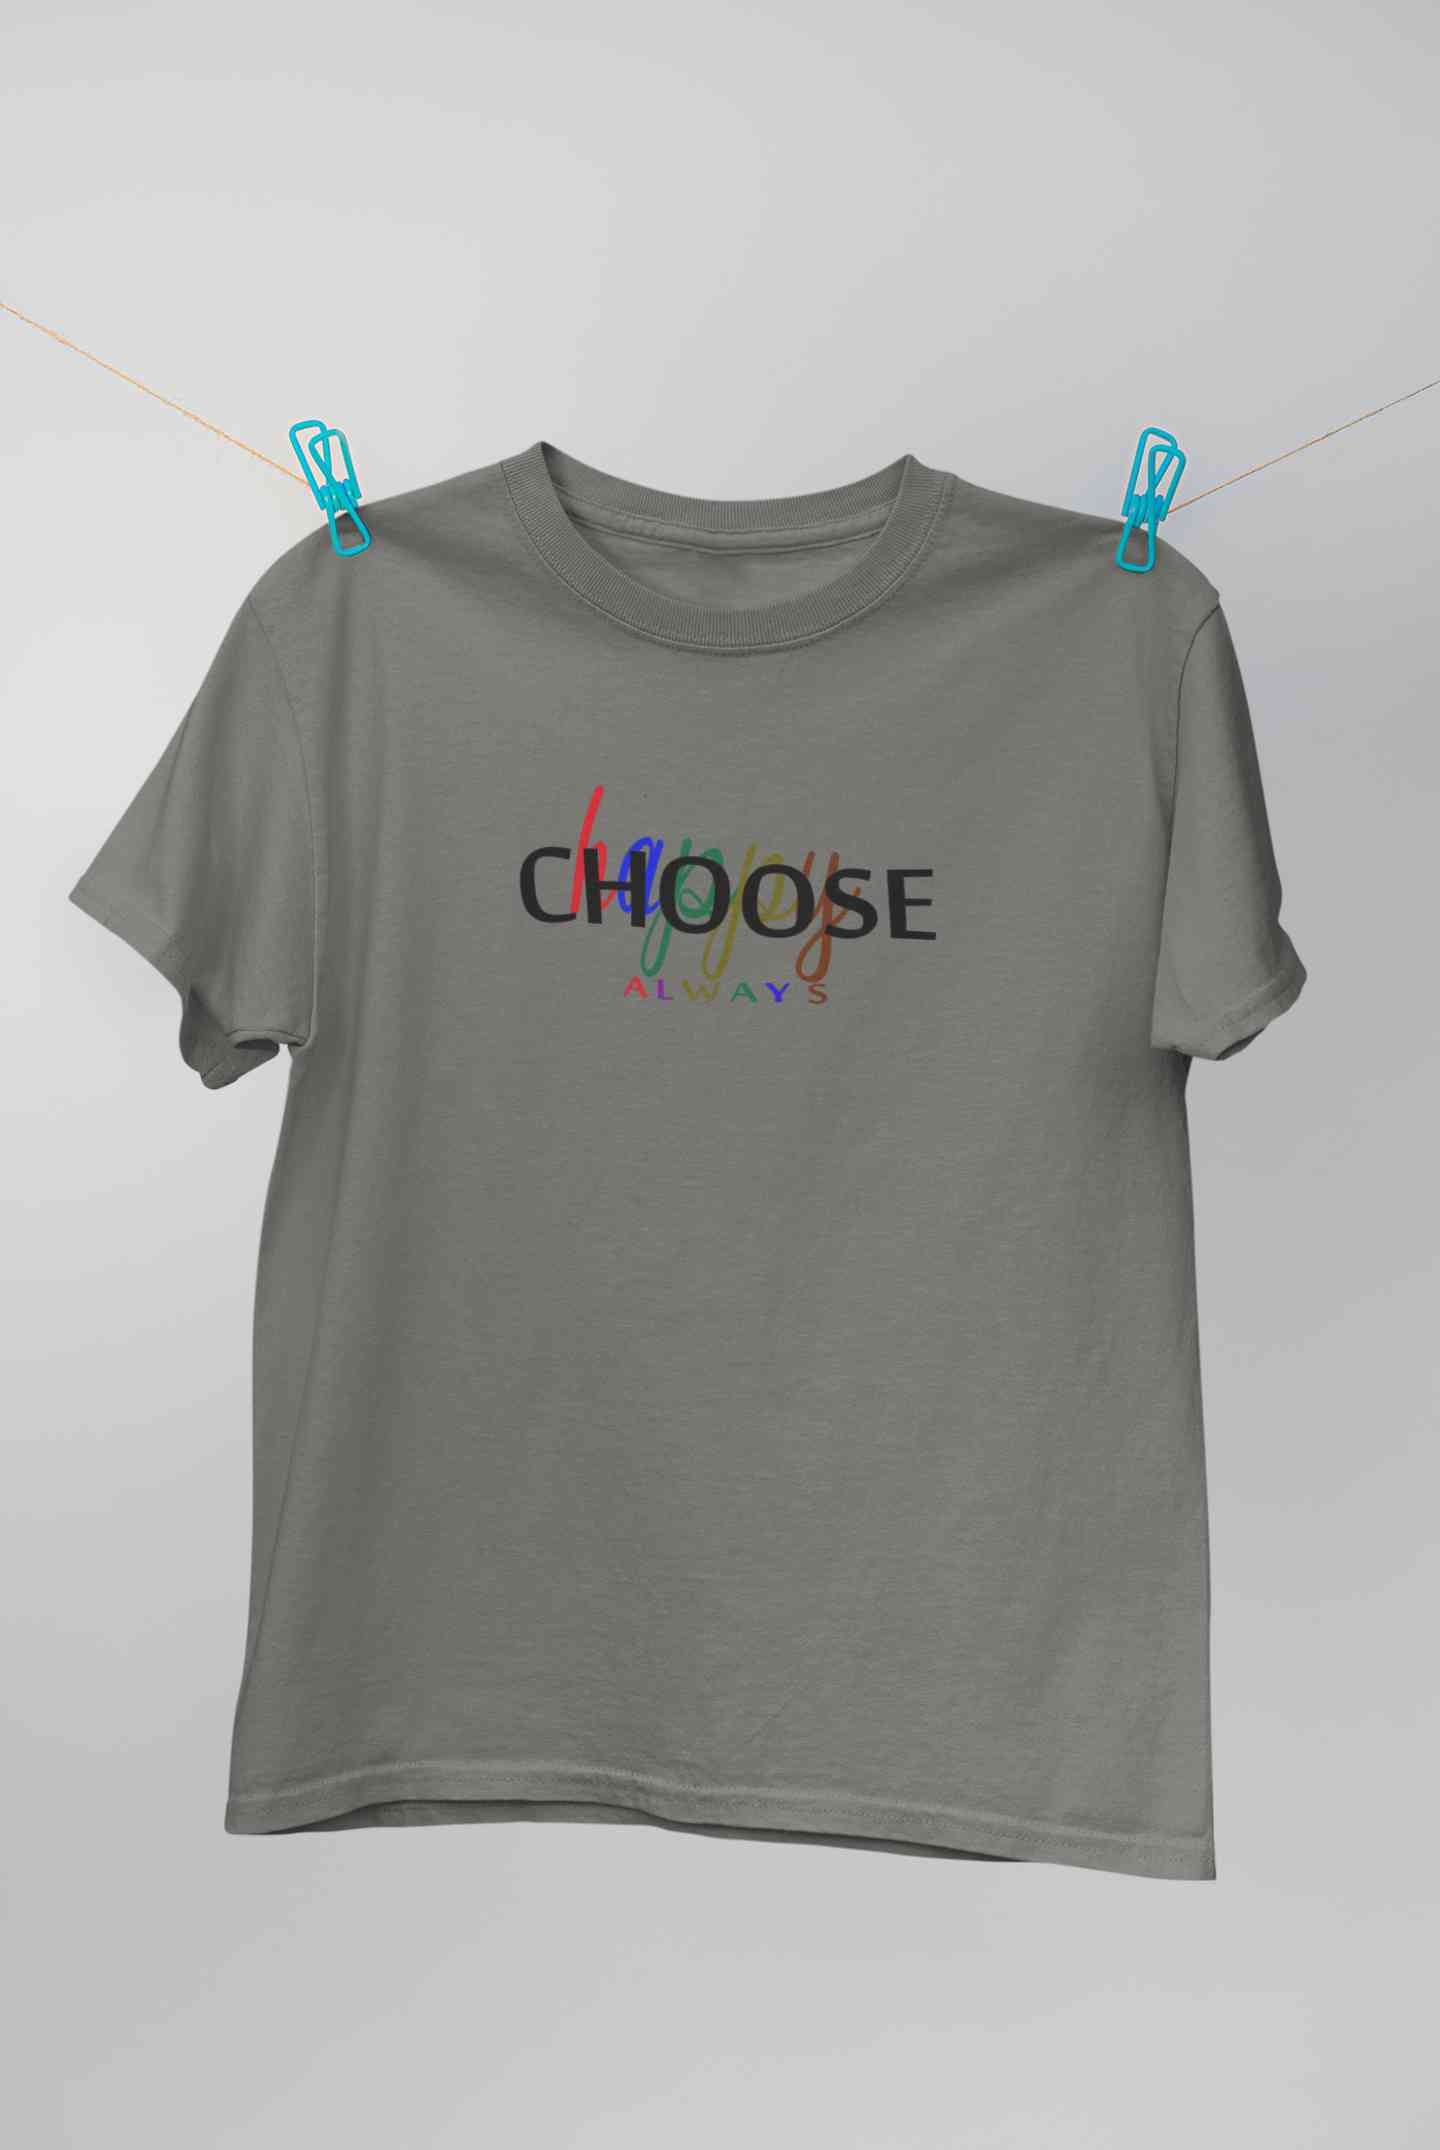 Choose Happy Always Women Half Sleeves T-shirt- FunkyTeesClub